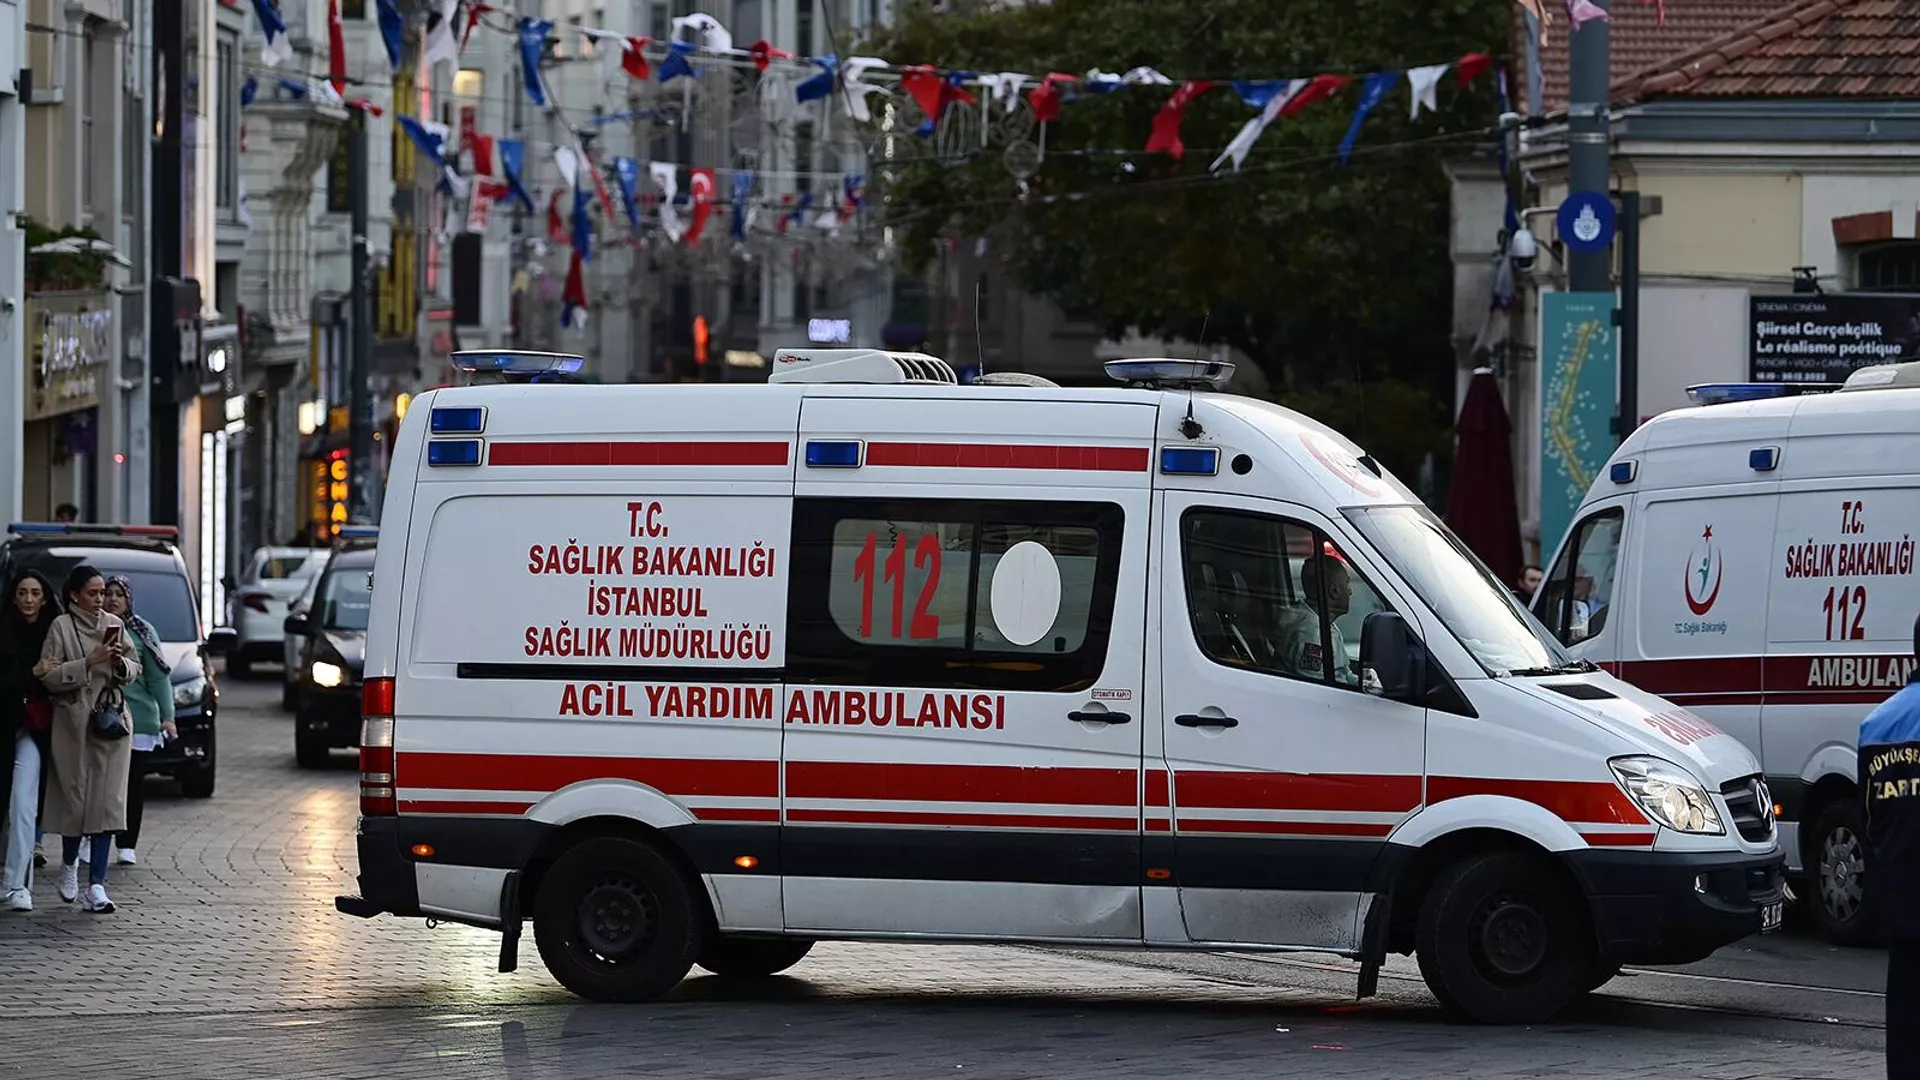 Թուրքիայում վթարվել է զբոսաշրջիկներ տեղափոխող ավտոբուսը. կան զոհեր